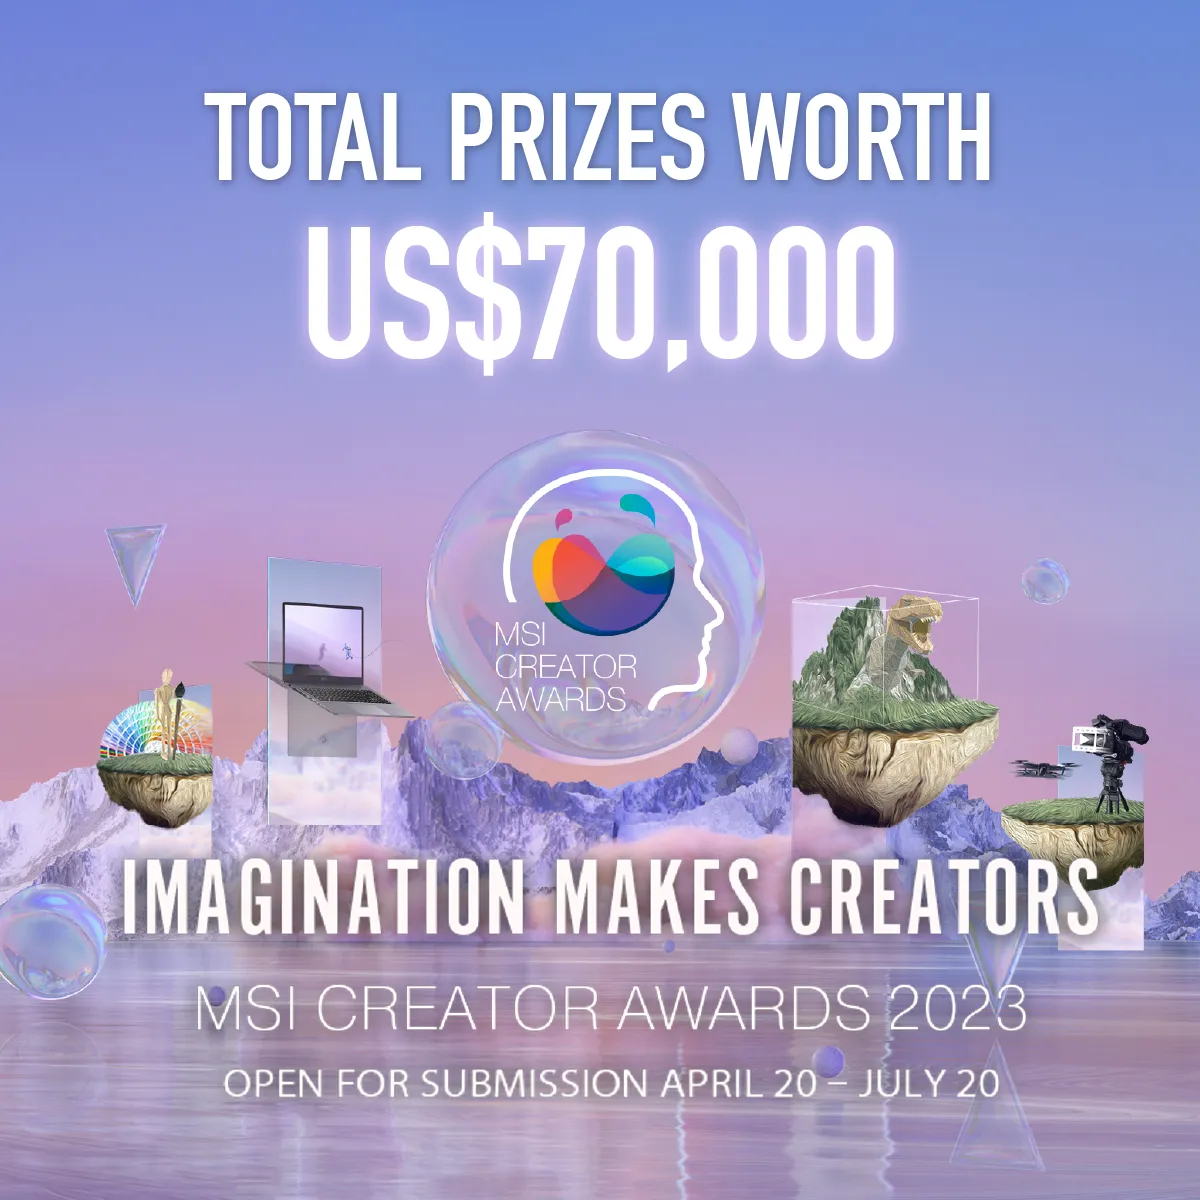 Cuộc thi MSI Creator Awards 2023 cho các nhà sáng tạo trên toàn cầu với giải thưởng giá trị lên đến 70,000 USD